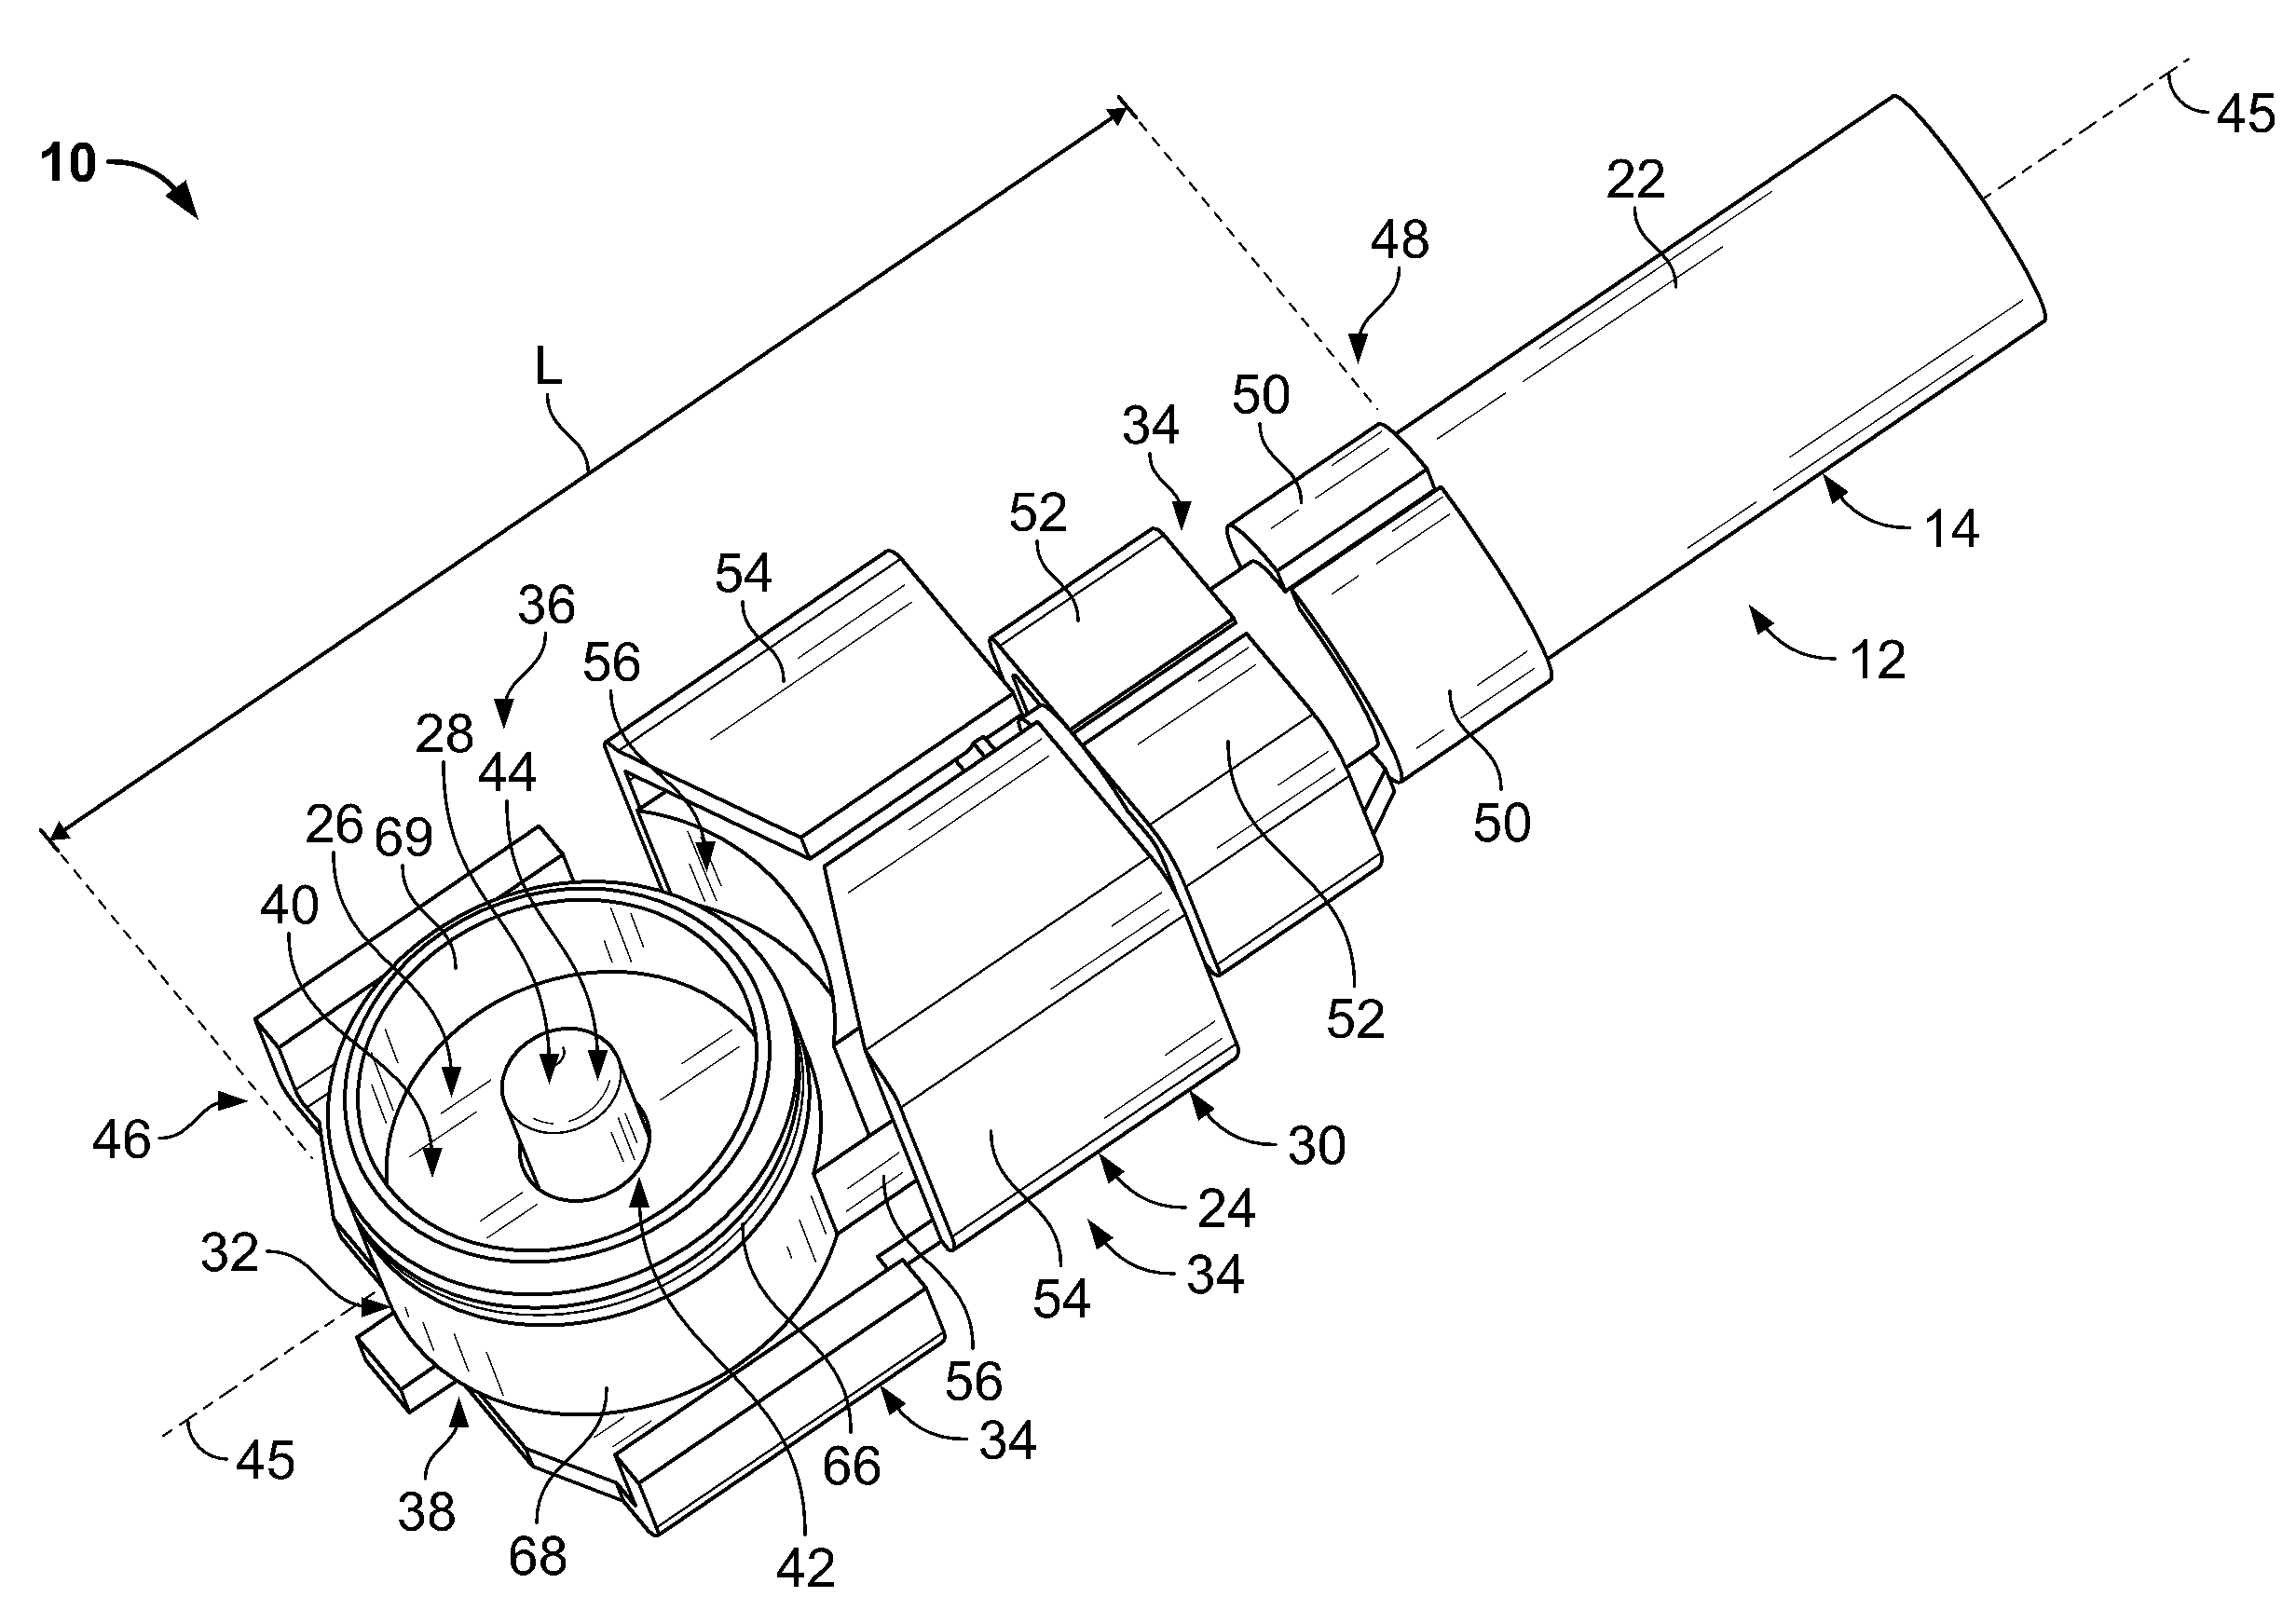 Ultraminiature coax connector